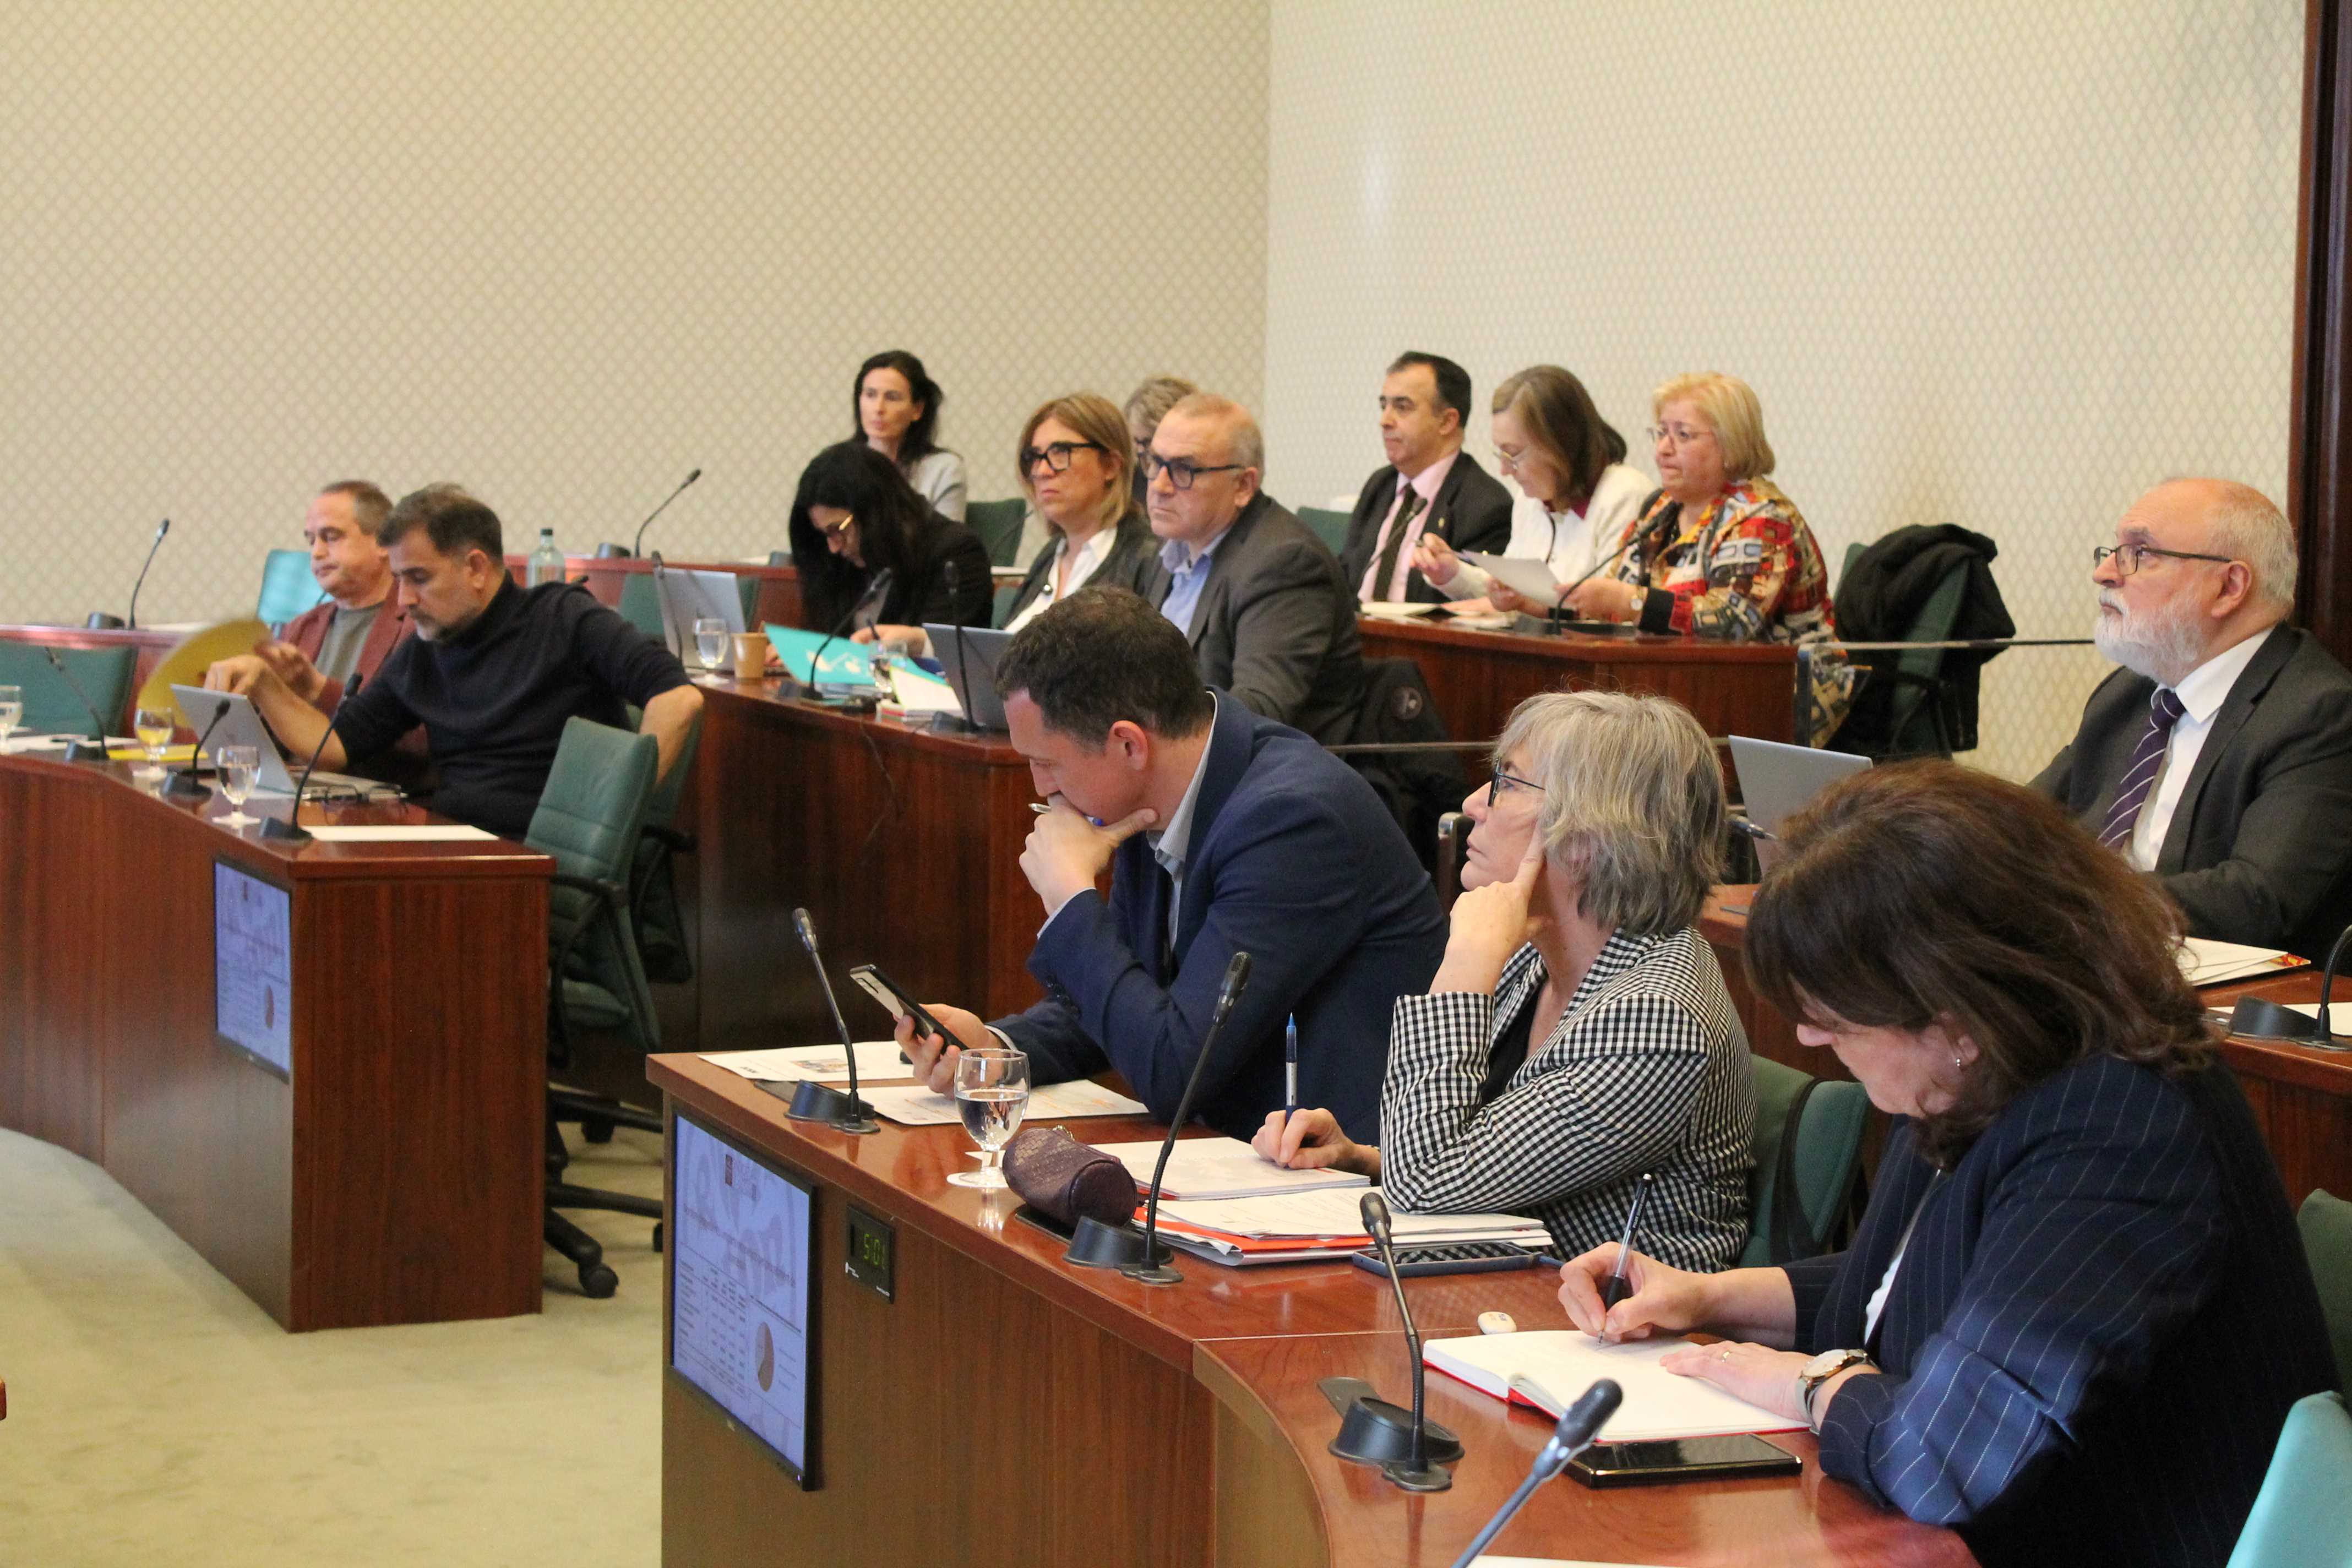 Vista general de la Comissió de la Sindicatura de Comptes, amb els membres del Ple al fons.